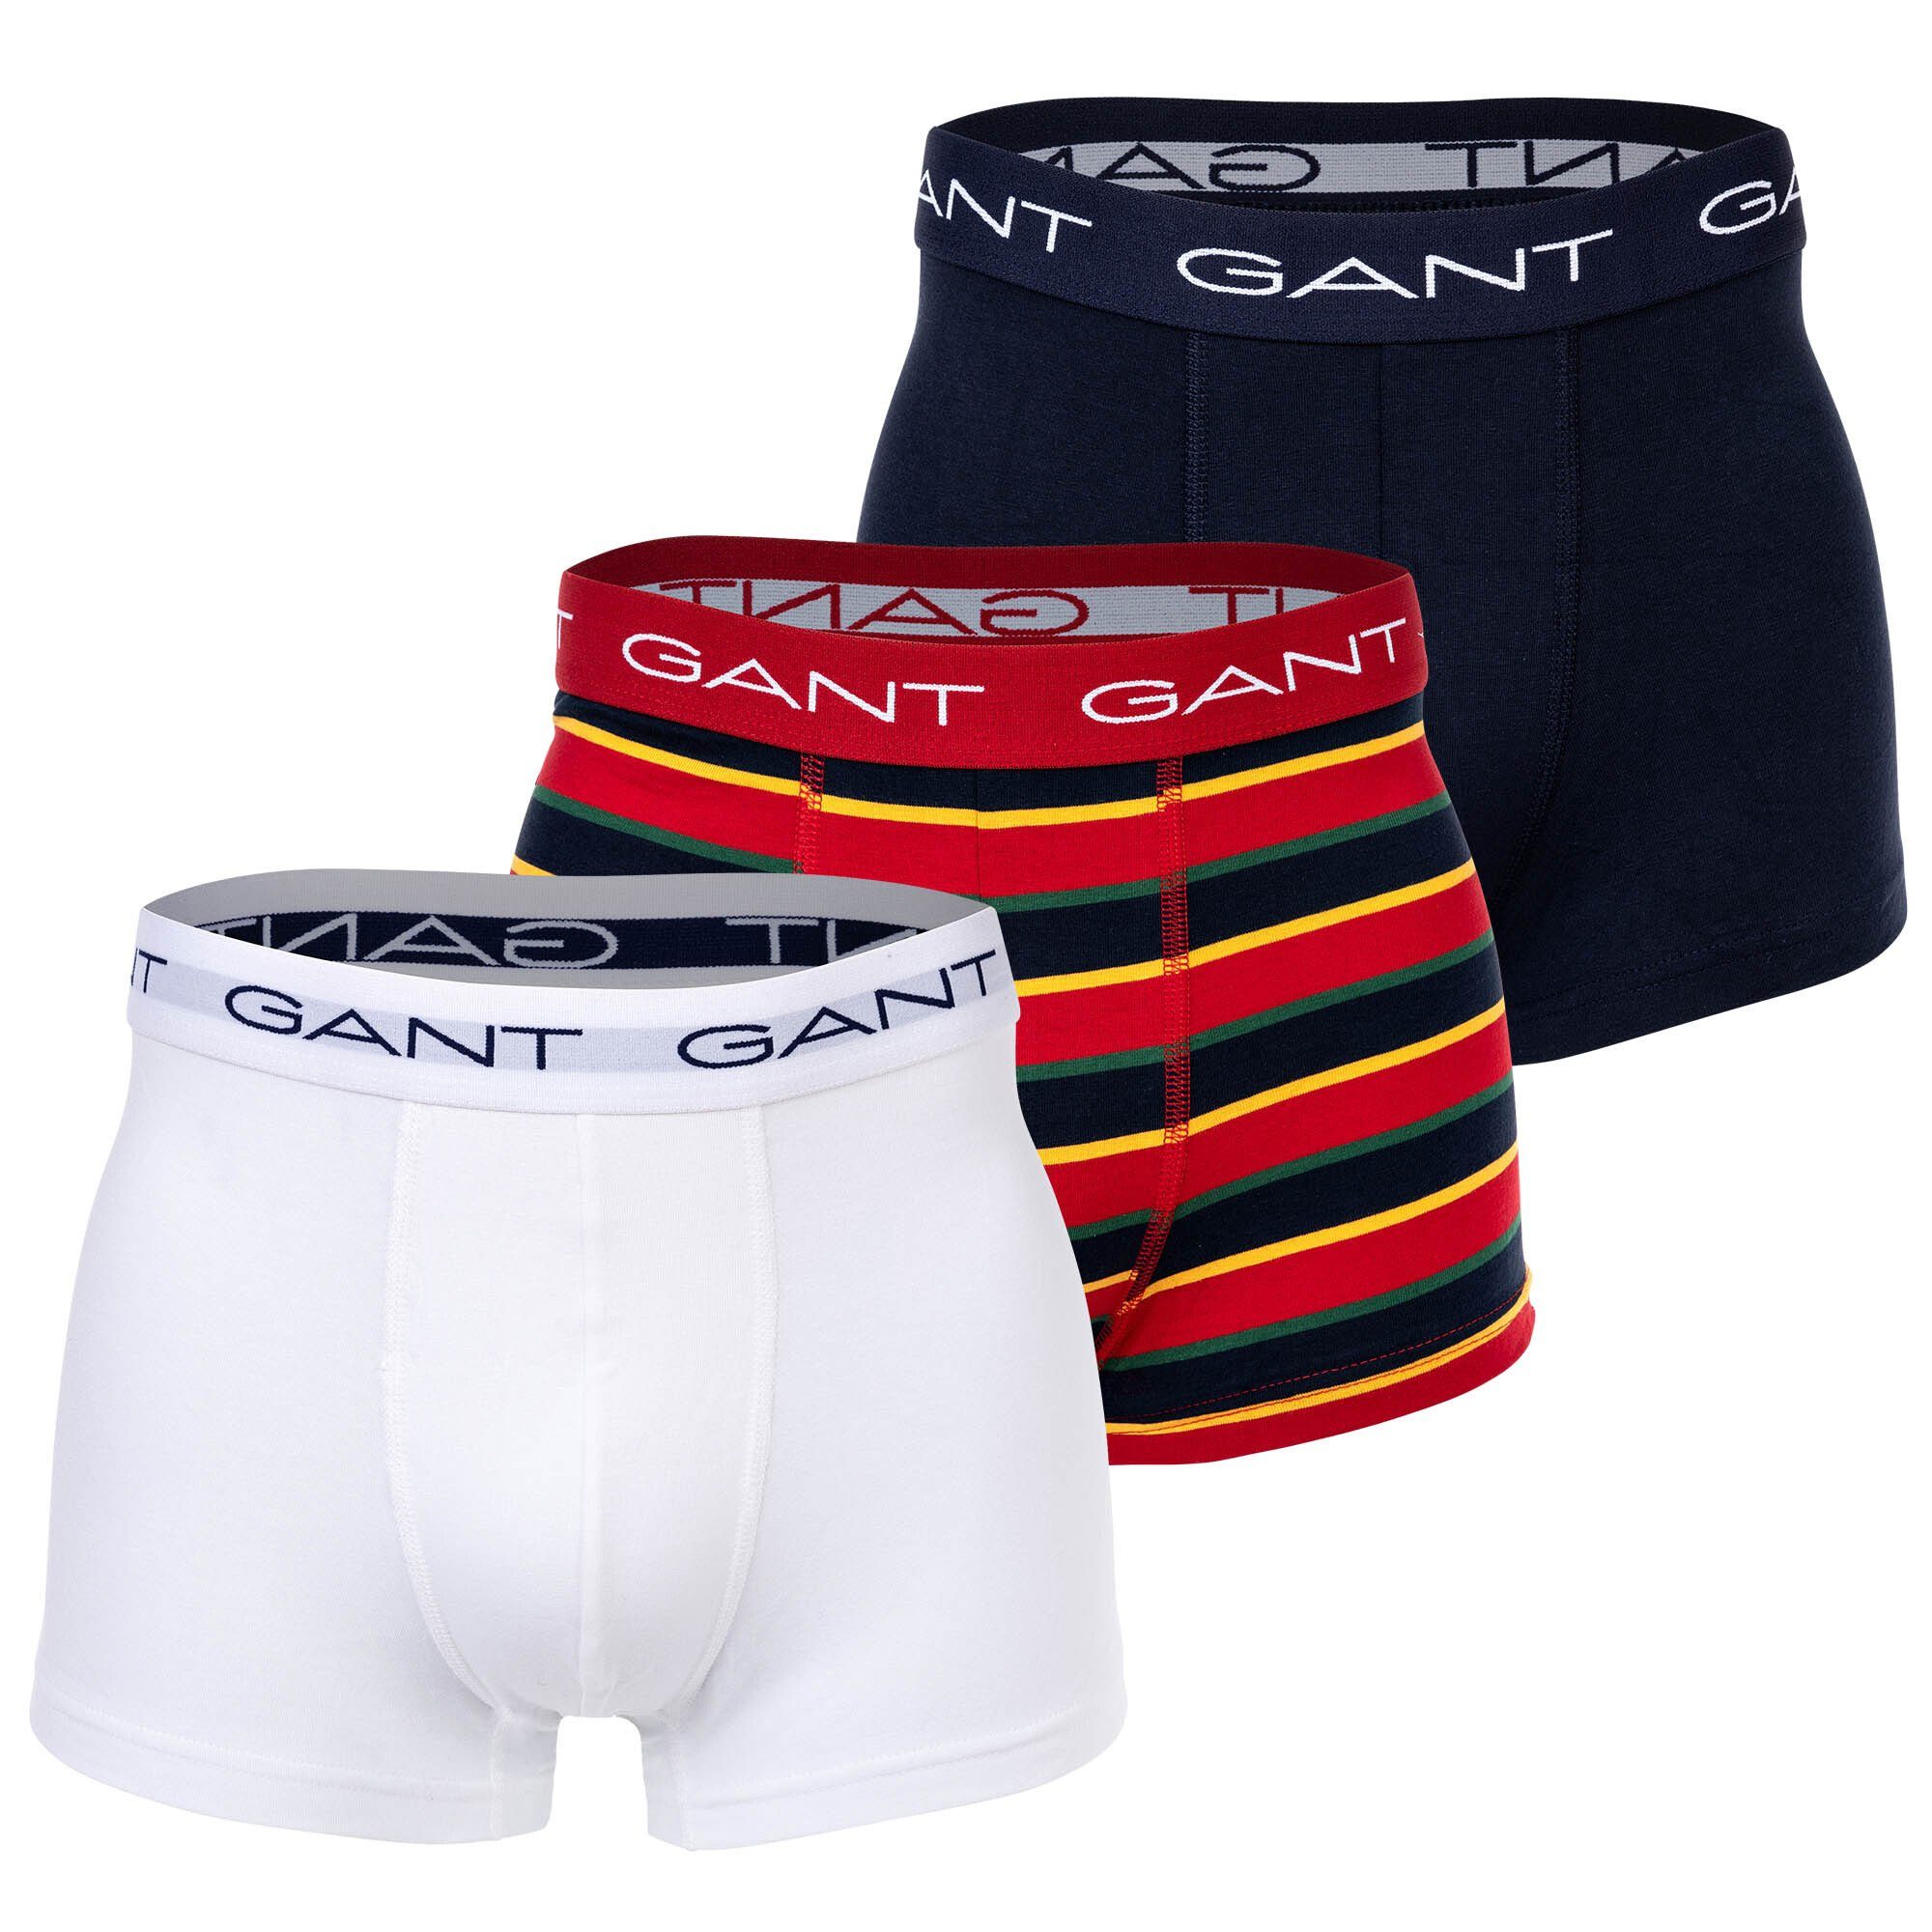 Gant Boxer Herren Boxer Shorts, 3er Pack - Stripe Trunks Rot